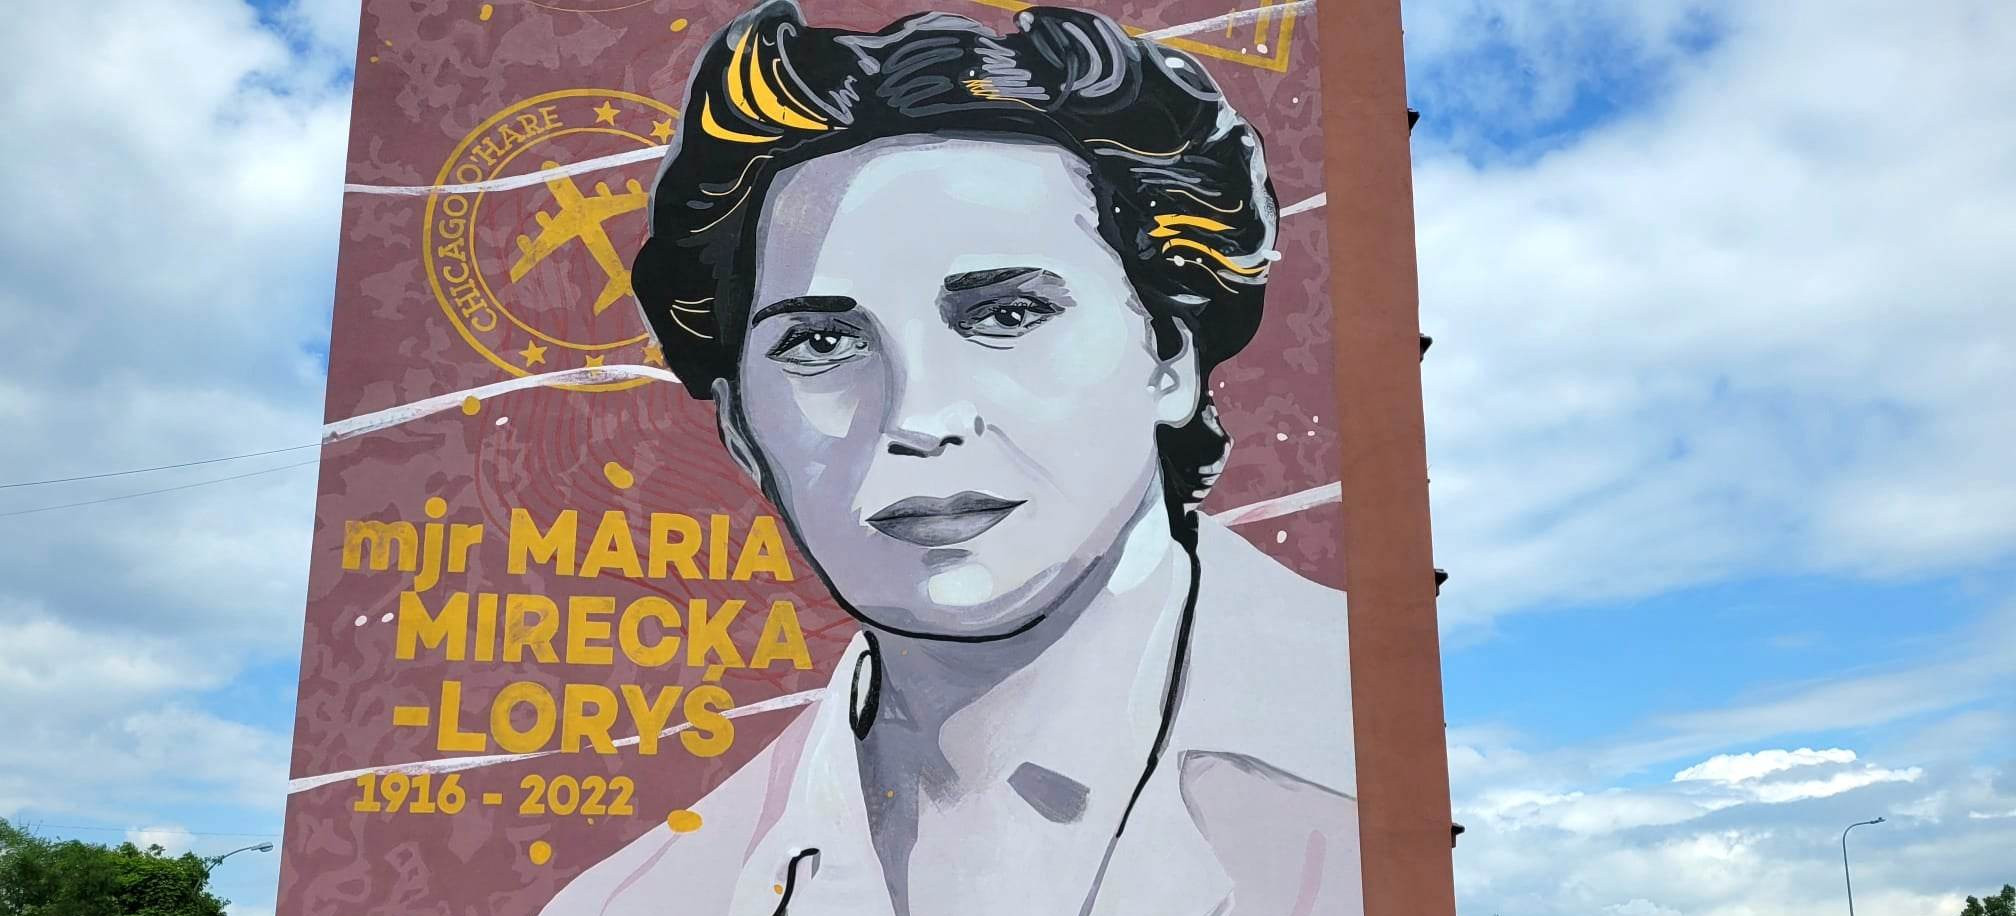 NISKO. Mural pomnik Marii Mireckiej – Loryś odsłonięty